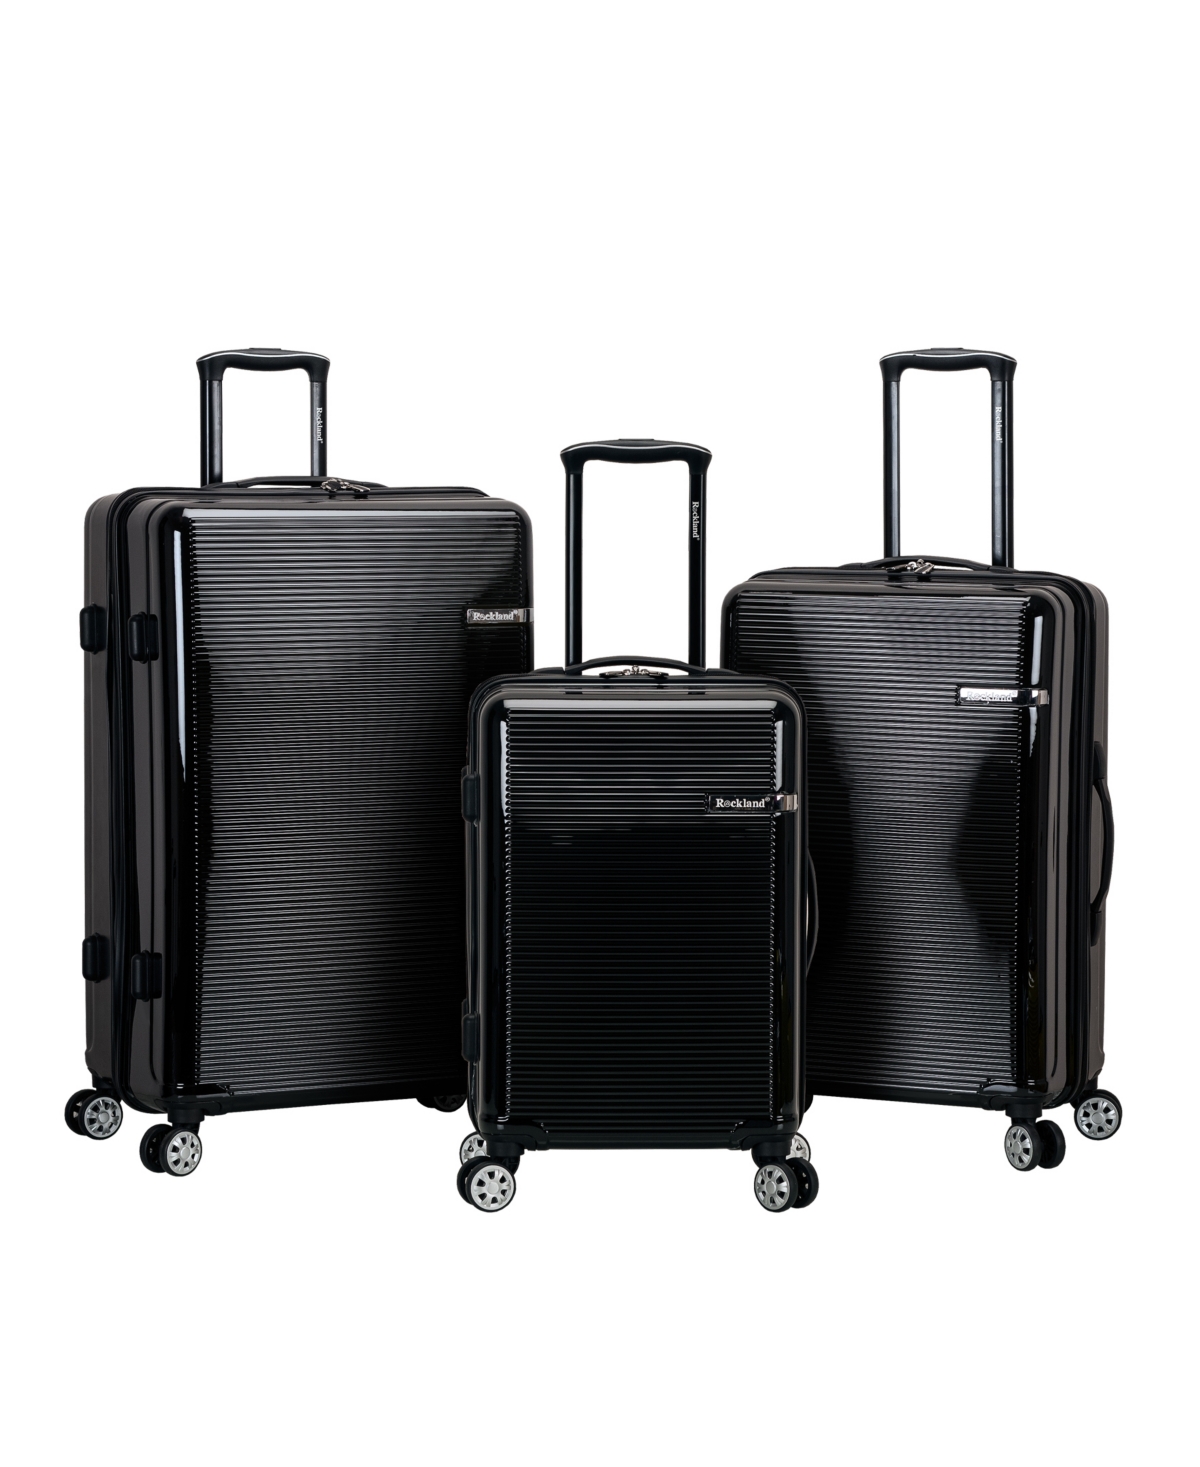 Horizon 3-Pc. Hardside Luggage Set - Yellow